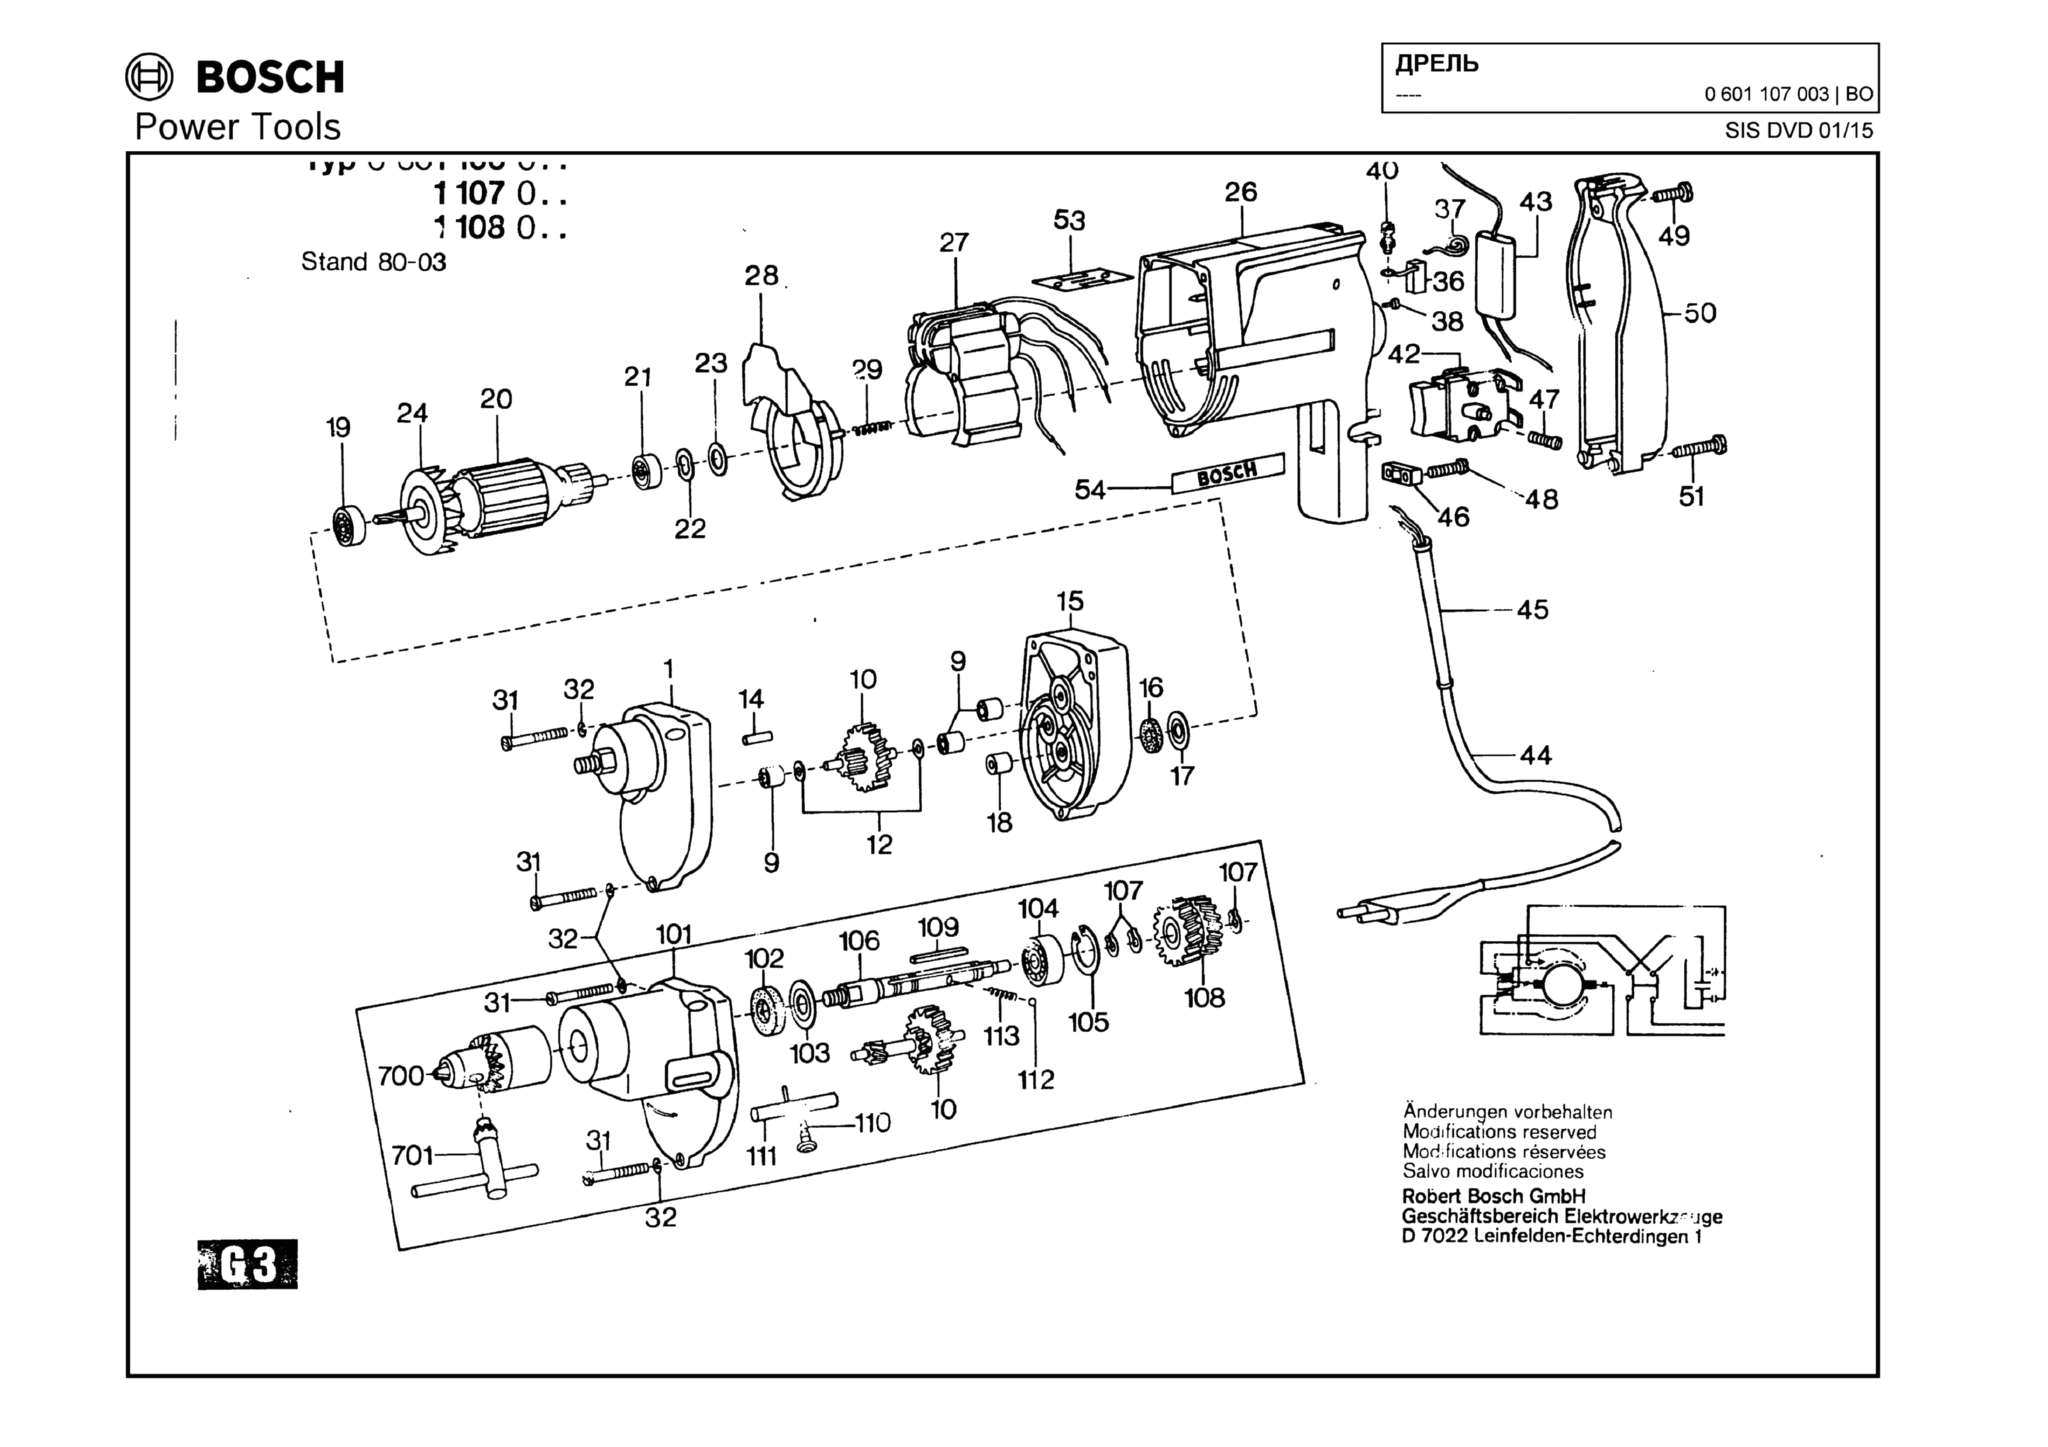 Запчасти, схема и деталировка Bosch (ТИП 0601107003)